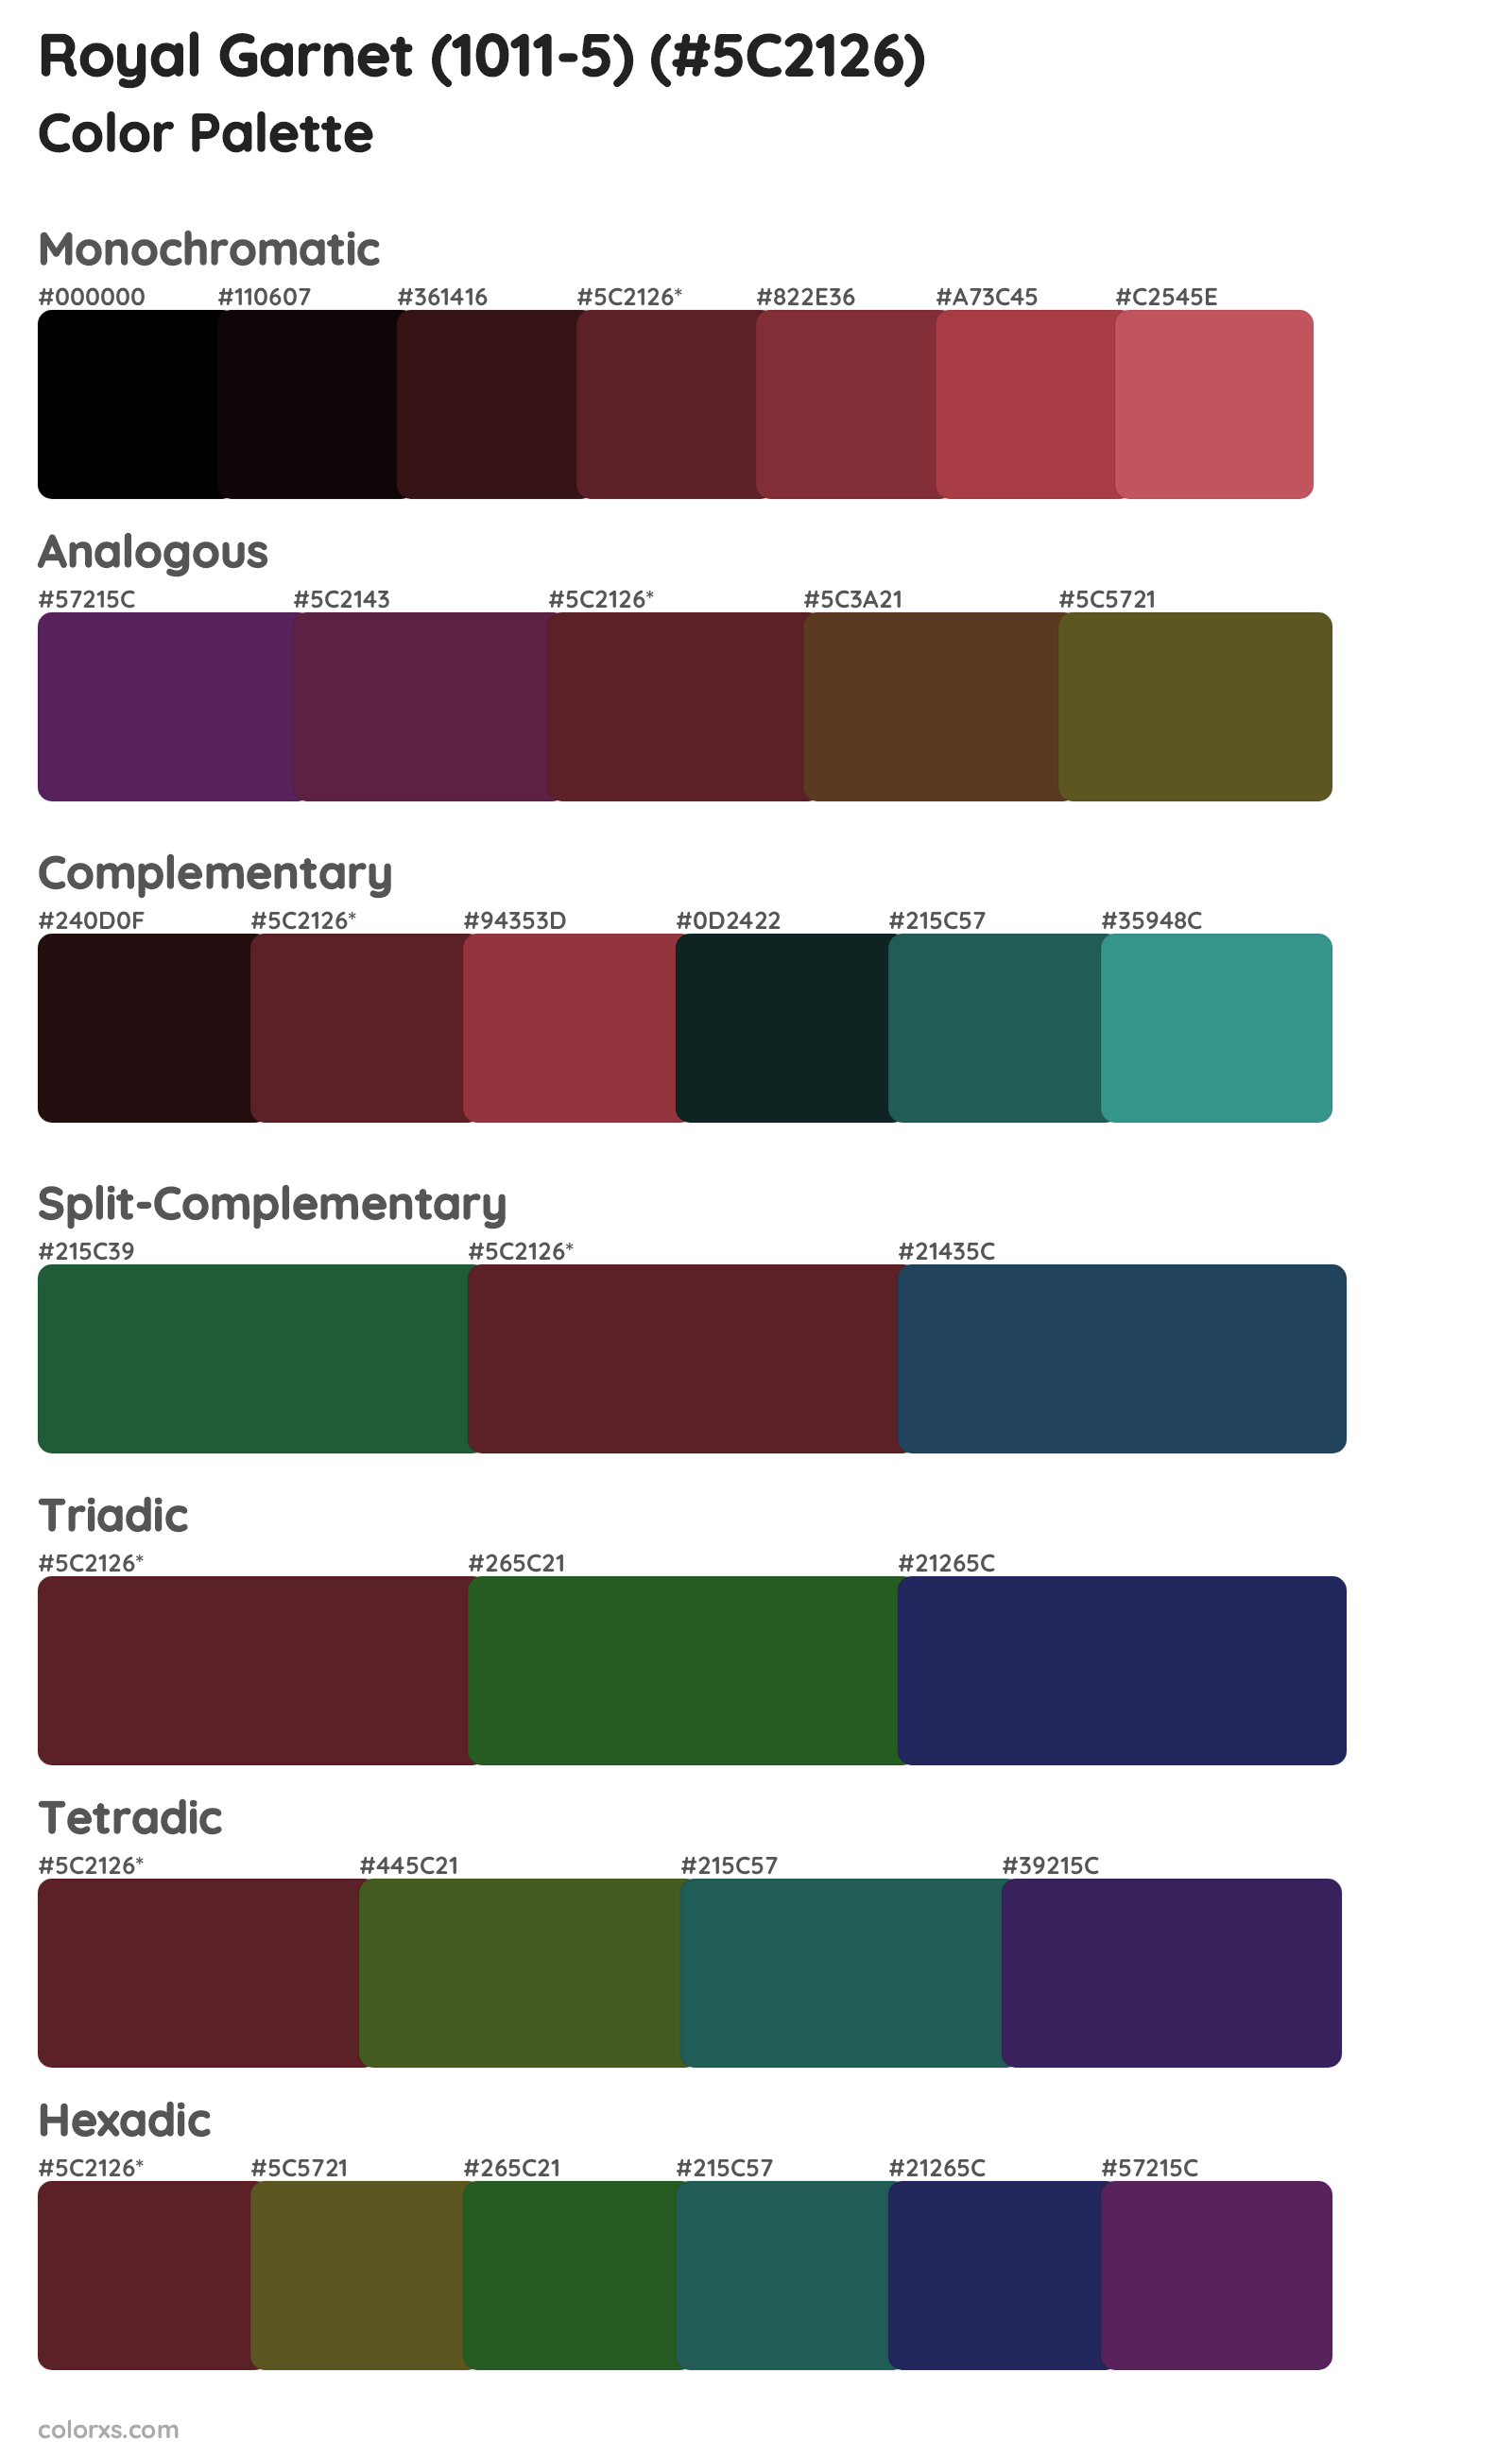 Royal Garnet (1011-5) Color Scheme Palettes